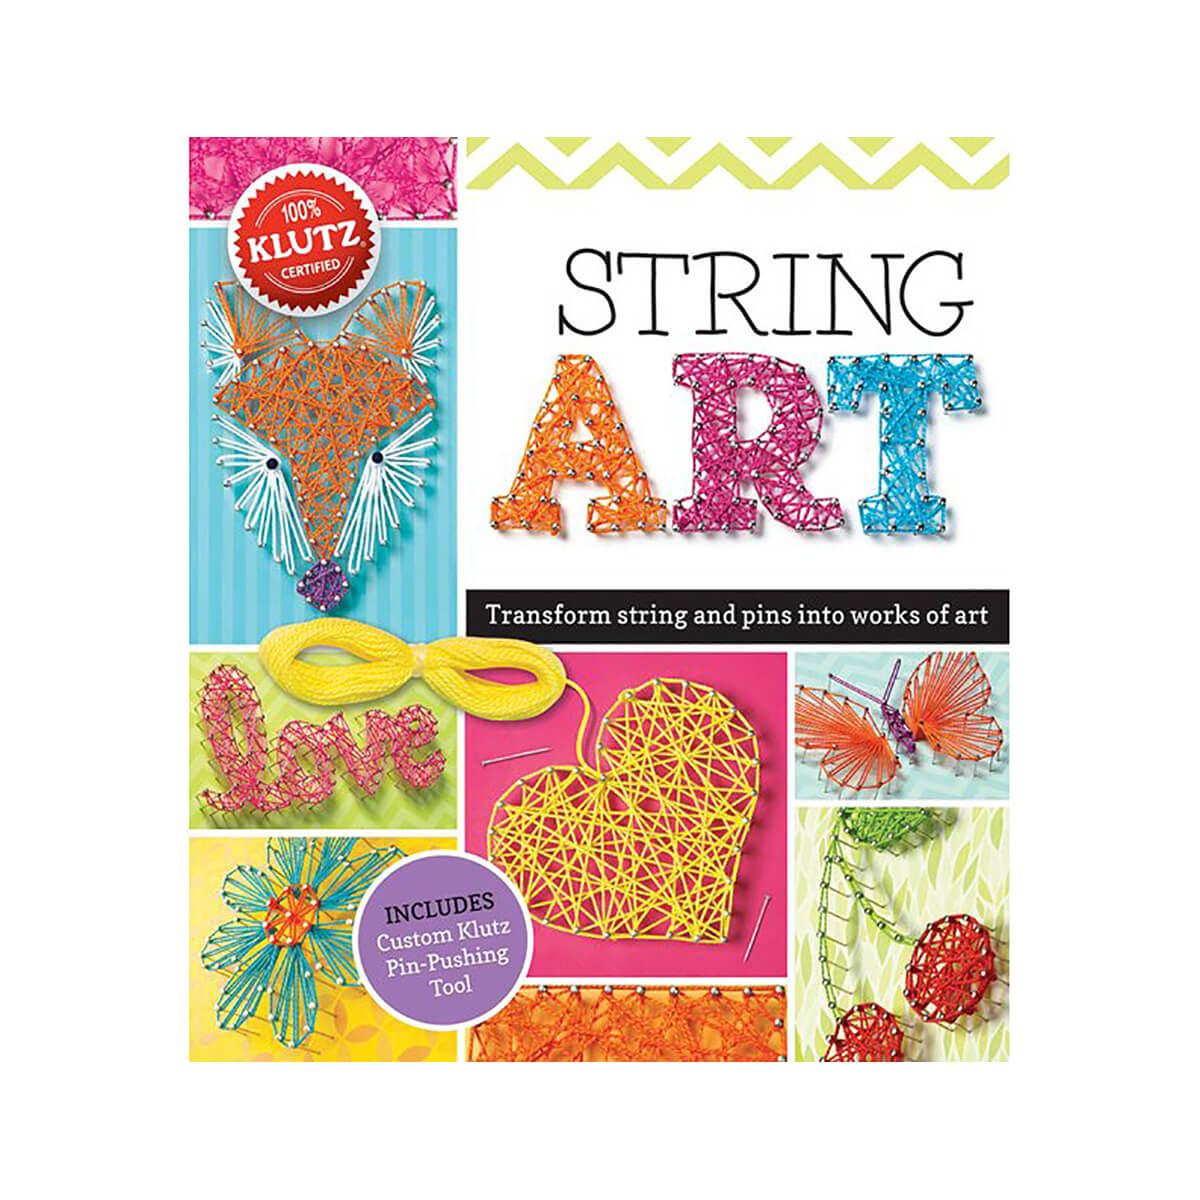  Klutz String Art Kit